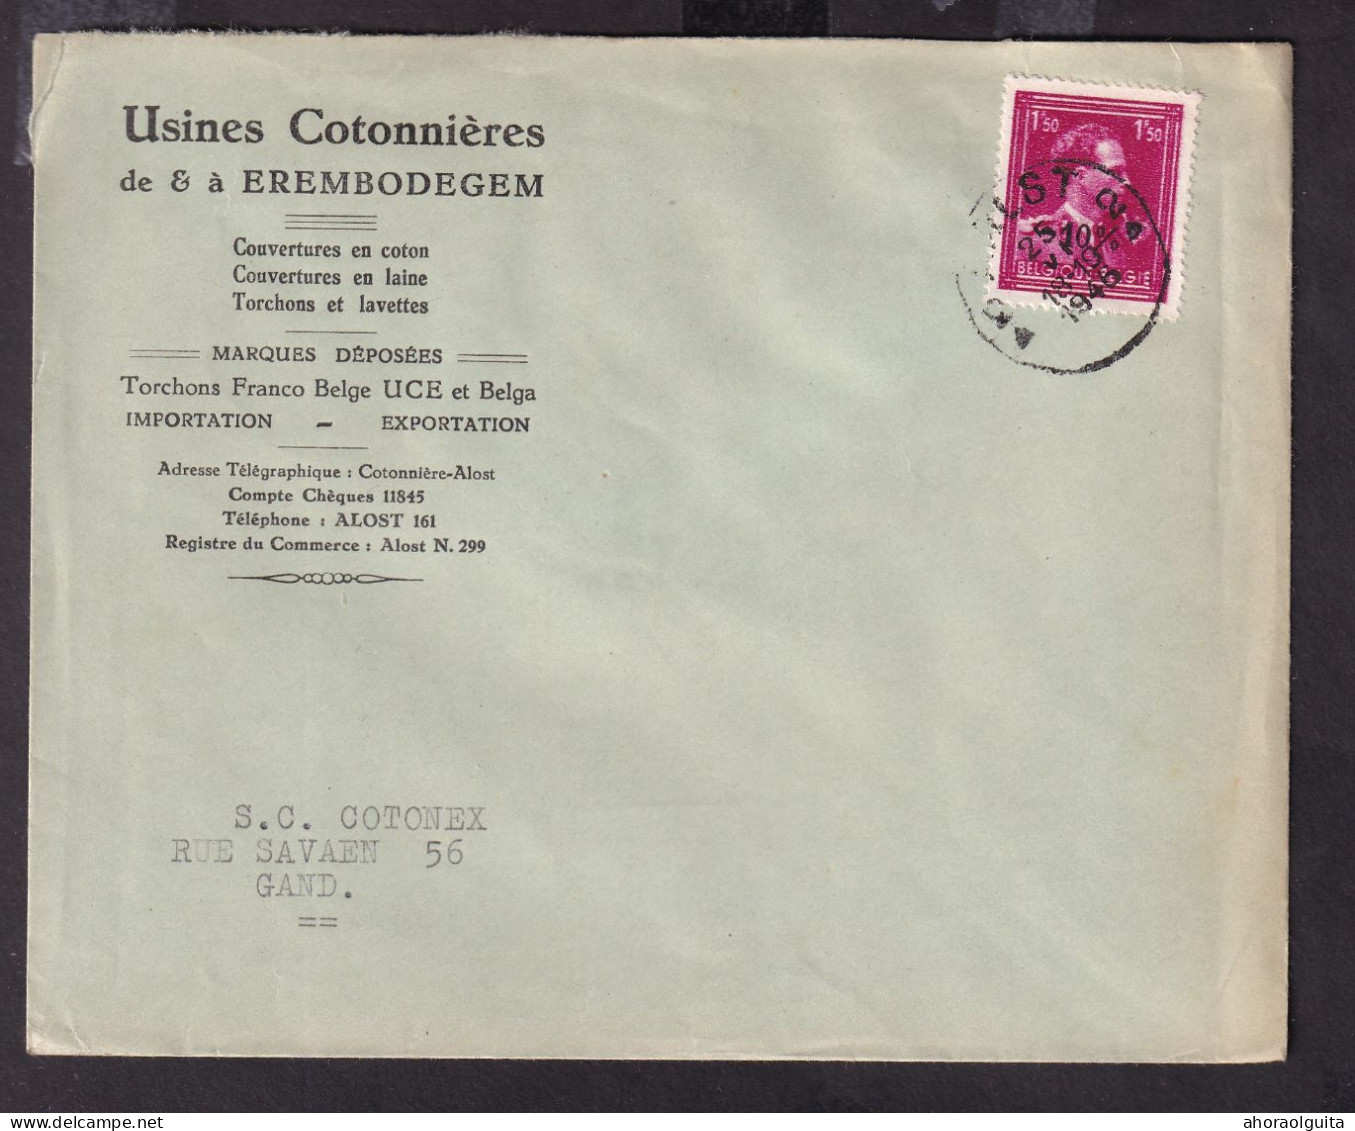 DDGG 149 -- Enveloppe TP Moins 10 % Surcharge Typo AALST 1946 - Entete Usines Cotonnières De EREMBODEGEM - 1946 -10%